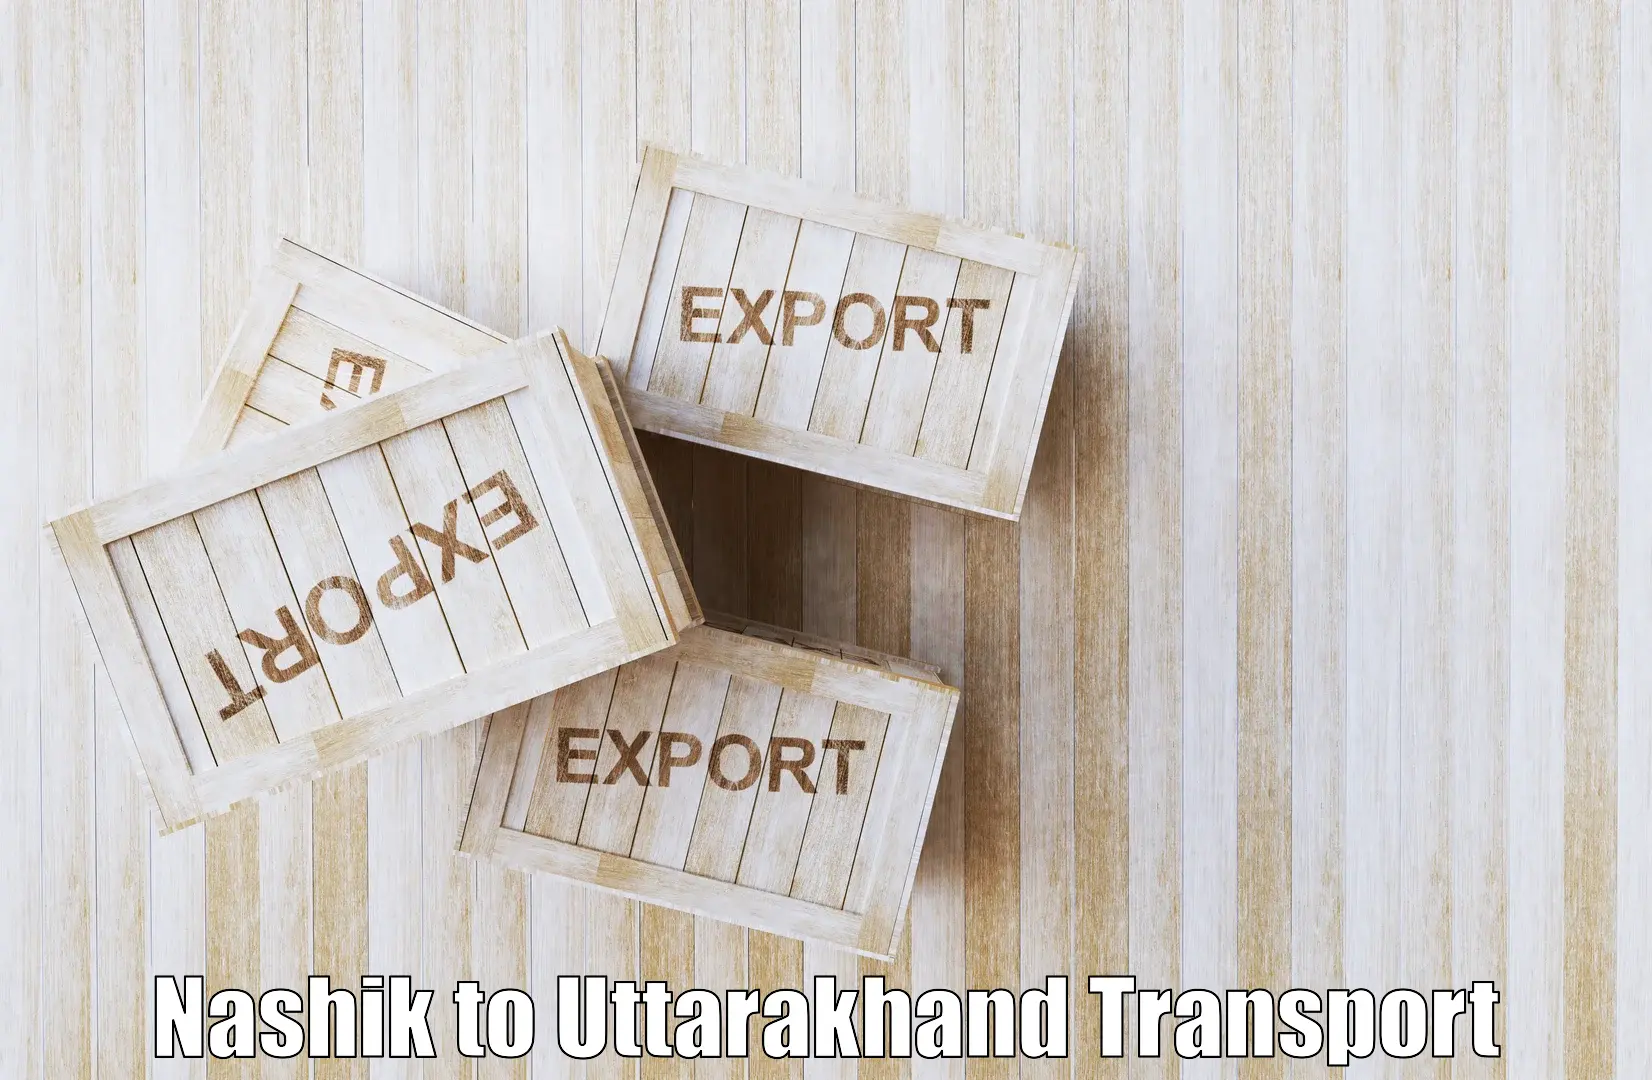 Land transport services Nashik to Uttarakhand